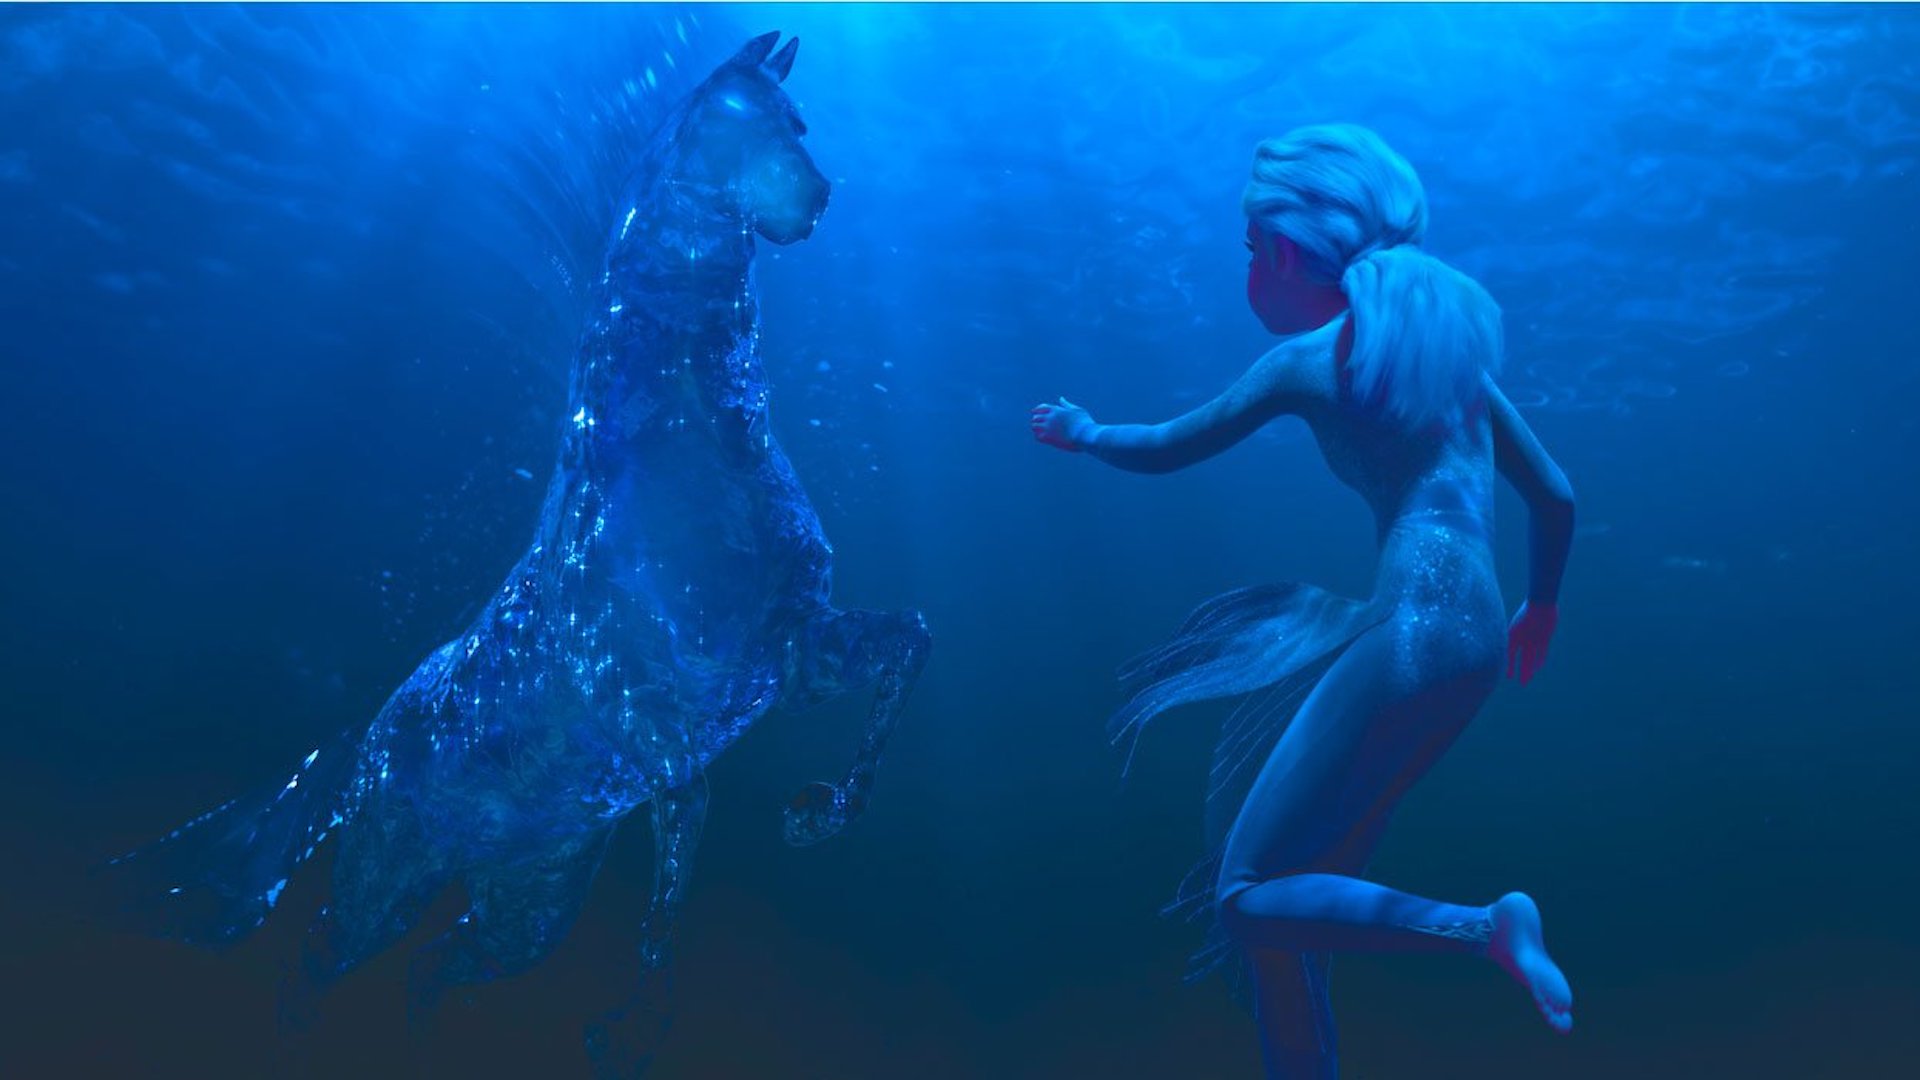 The Nokk and Elsa in Frozen 2